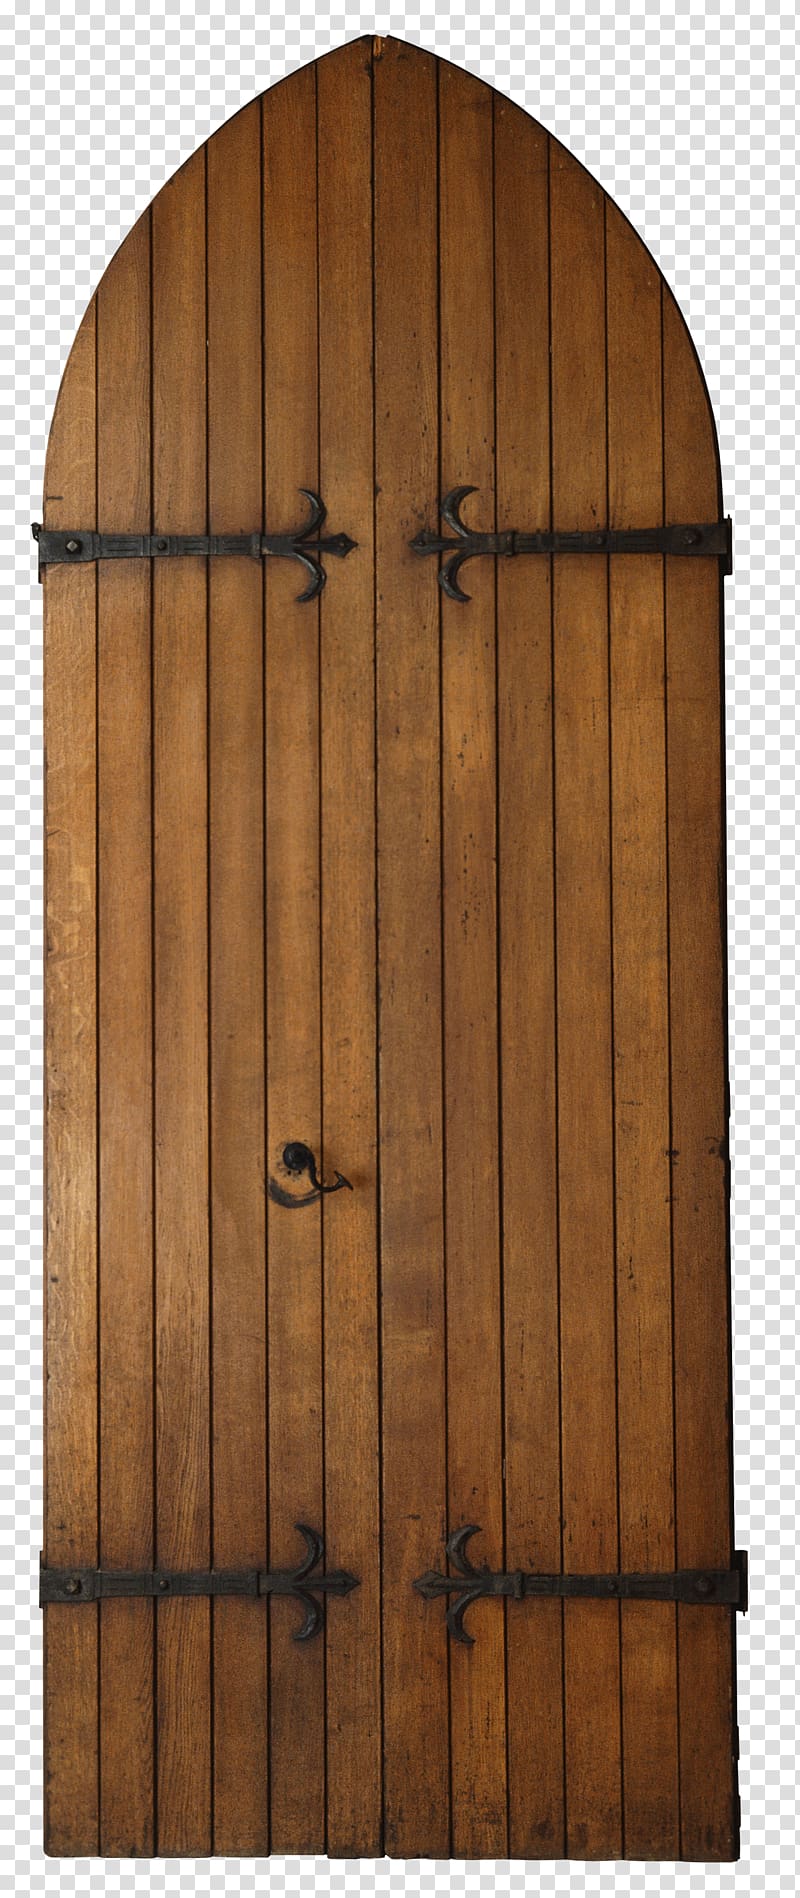 brown wooden panel, Door Icon, Western Magic Magic embellishment,Wooden door transparent background PNG clipart